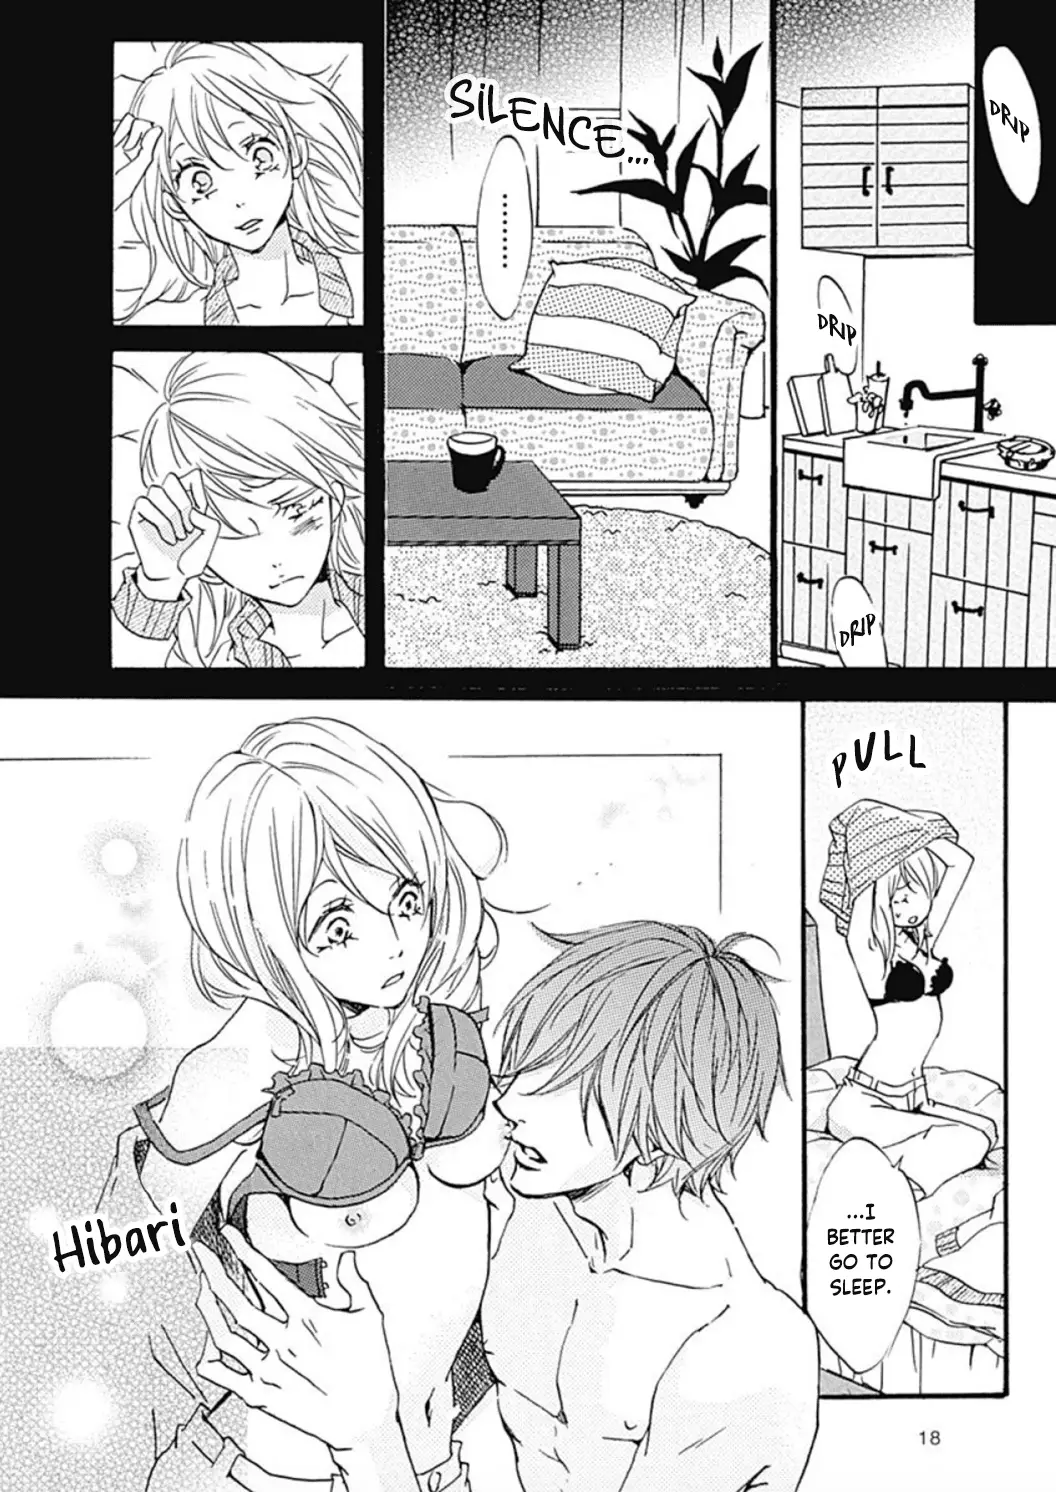 Tappuri No Kiss Kara Hajimete - 1 page 21-1631cb3a